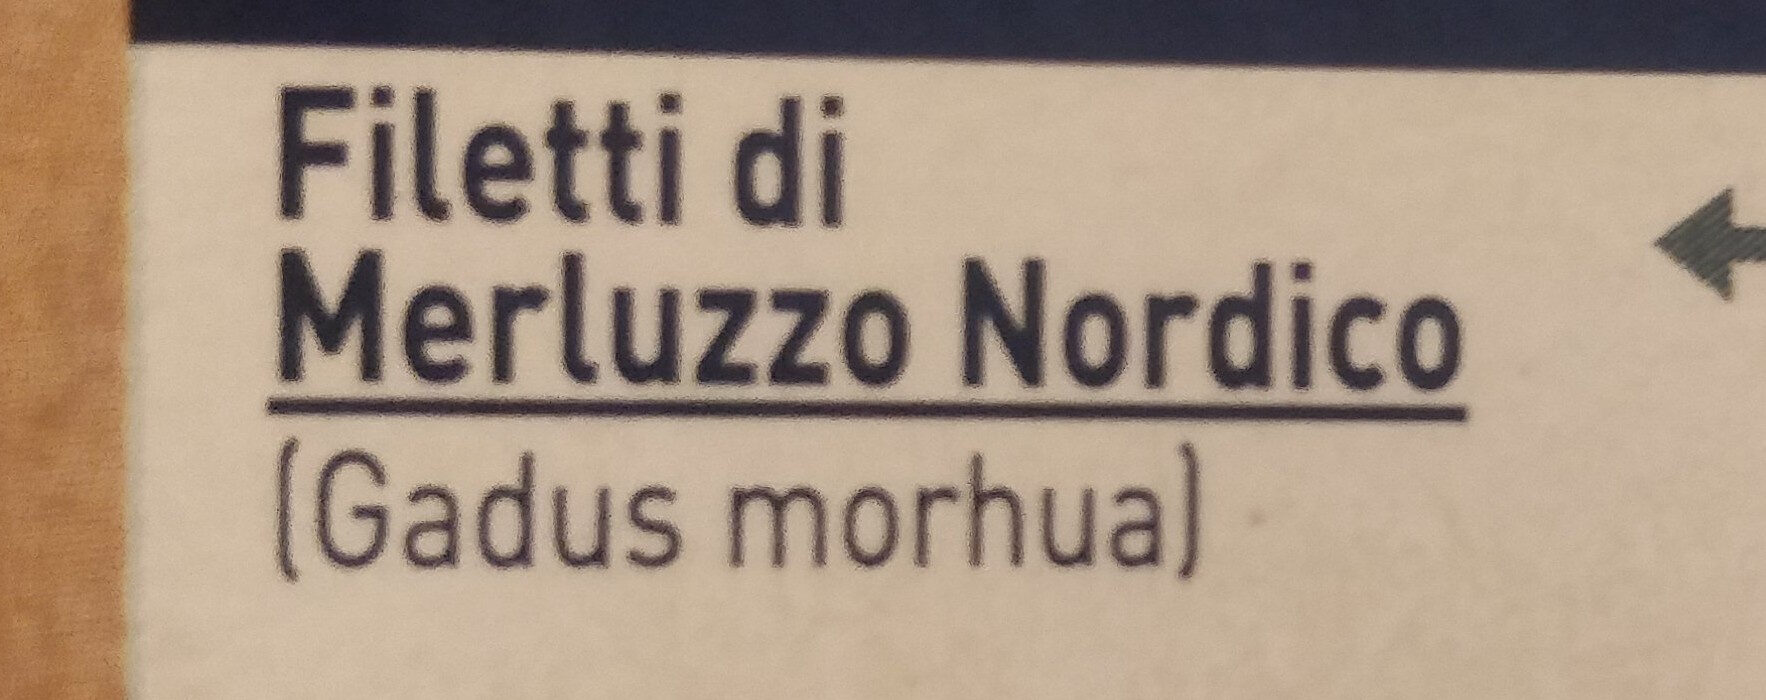 Filetti di merluzzo nordico - Ingredients - it